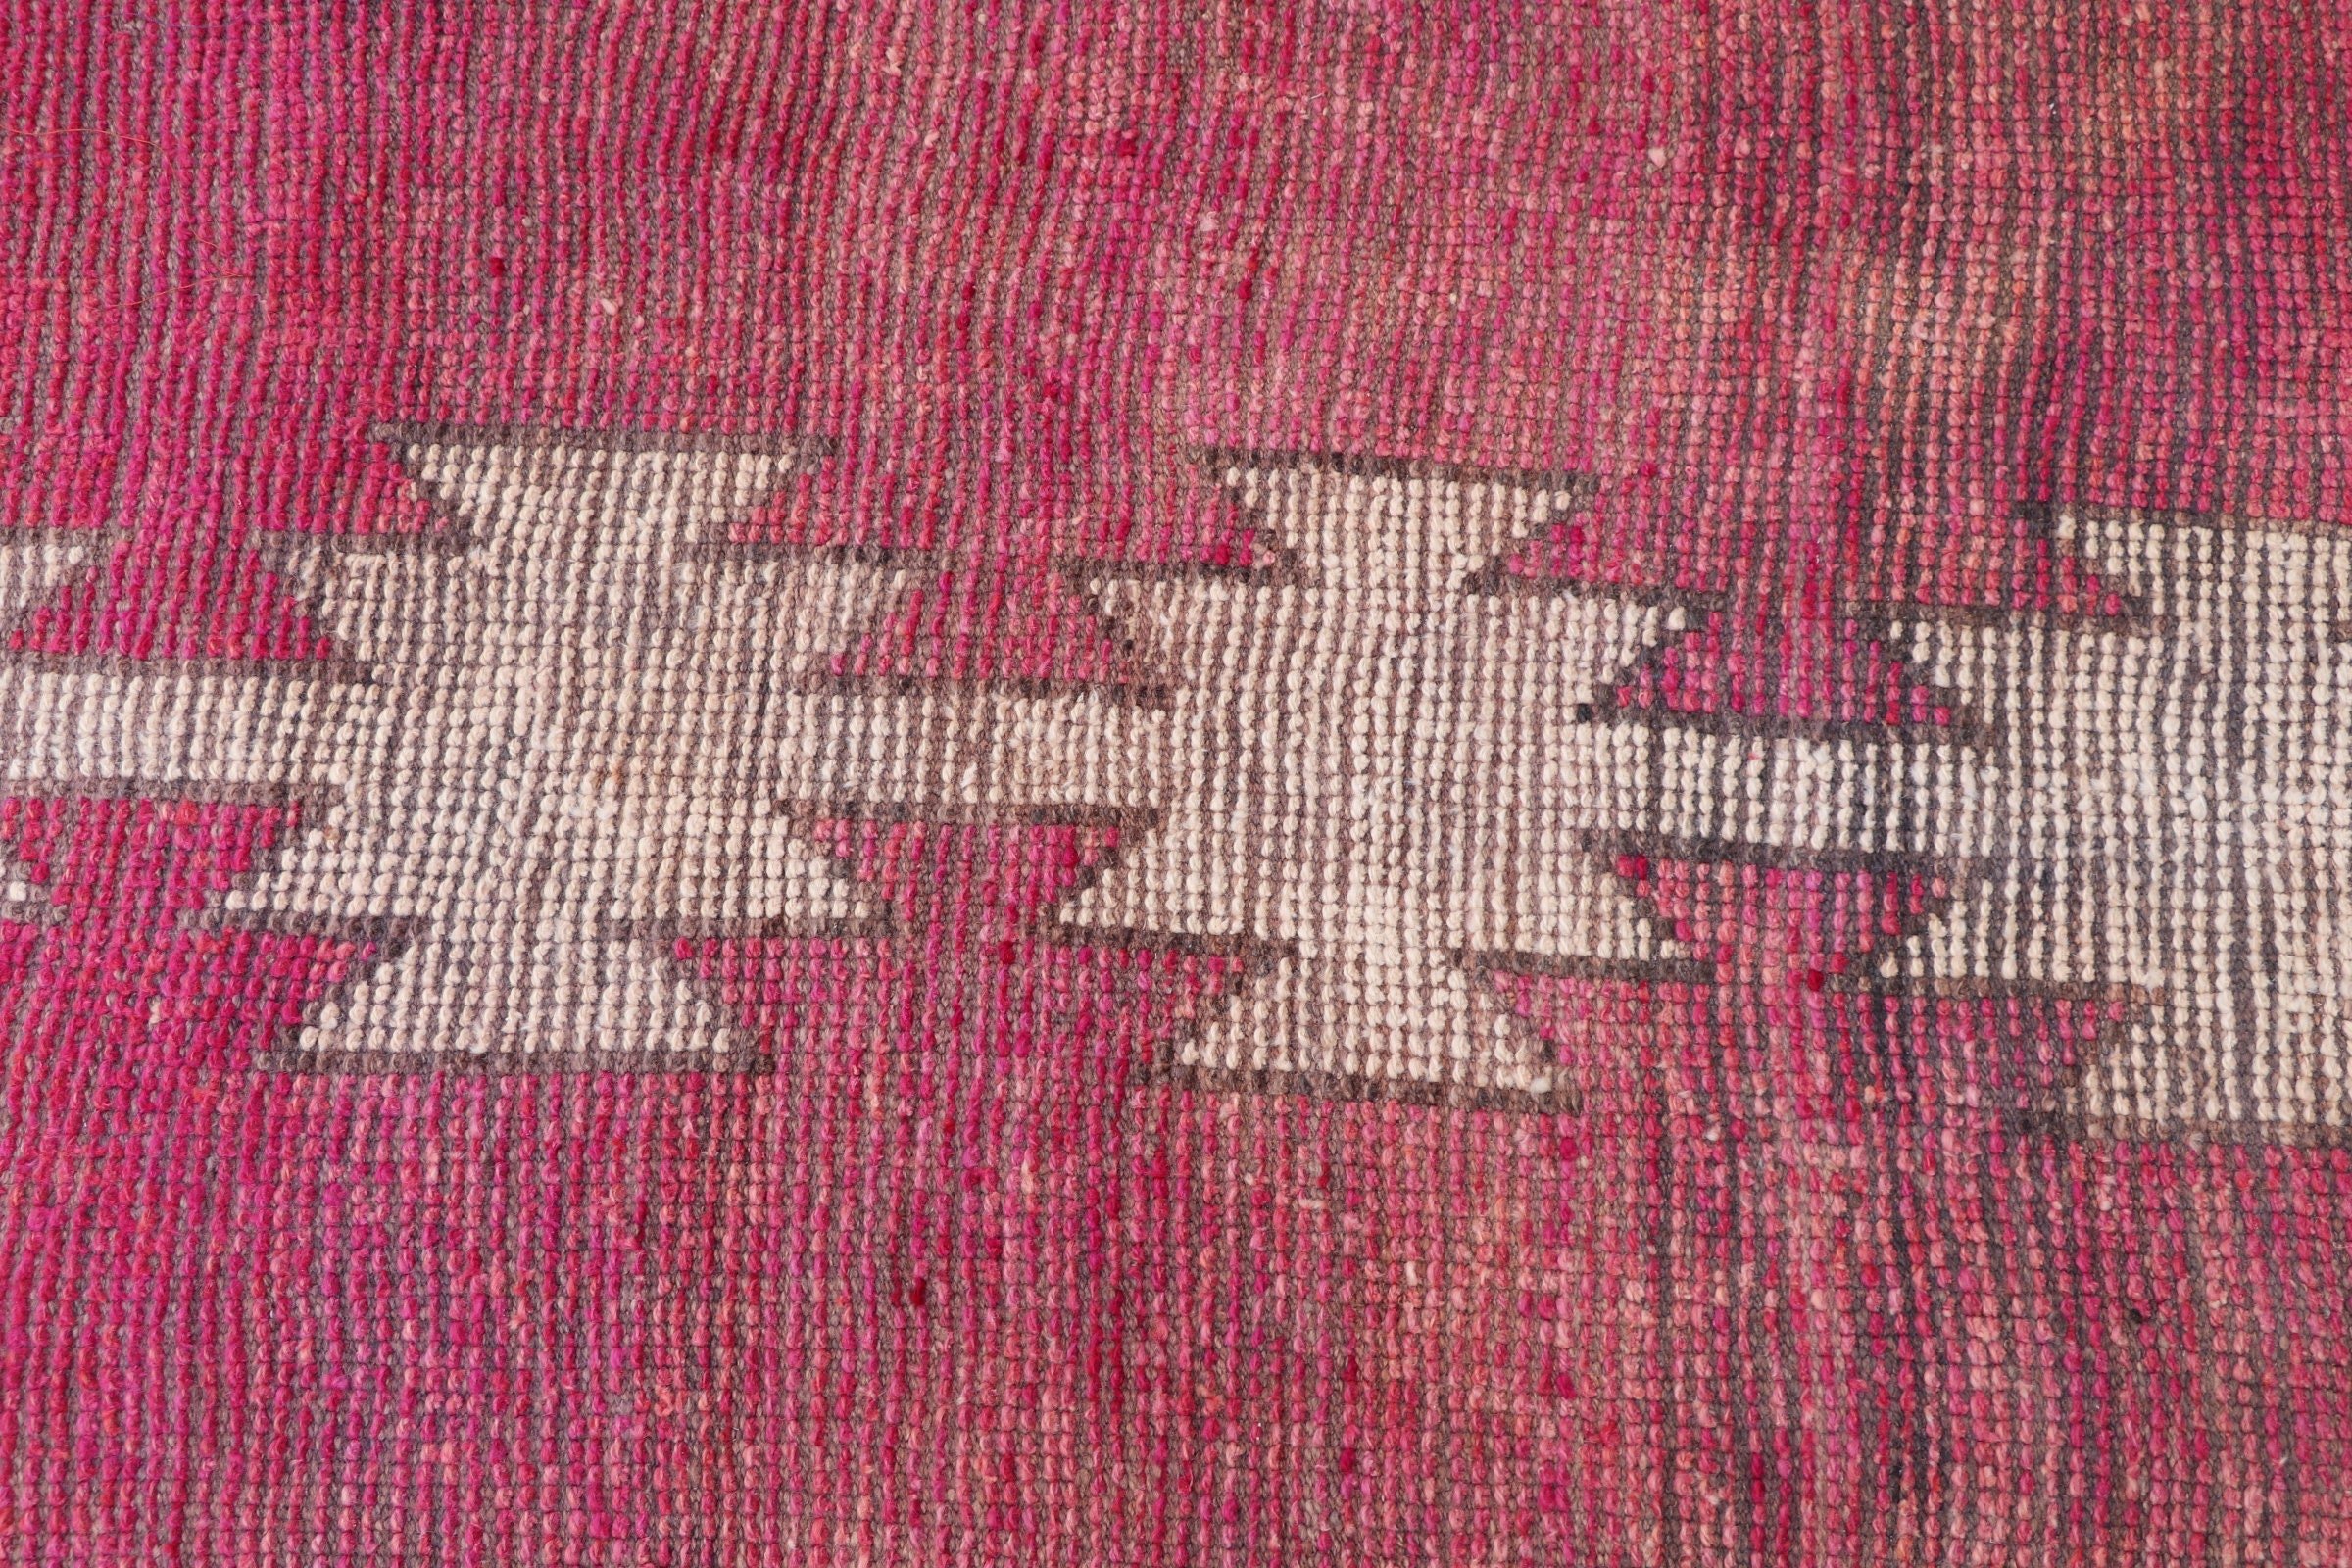 Stair Rug, Hallway Rug, Floor Rug, Wool Rug, Turkish Rug, Vintage Rug, Rugs for Corridor, 2.8x11.3 ft Runner Rug, Pink Moroccan Rugs